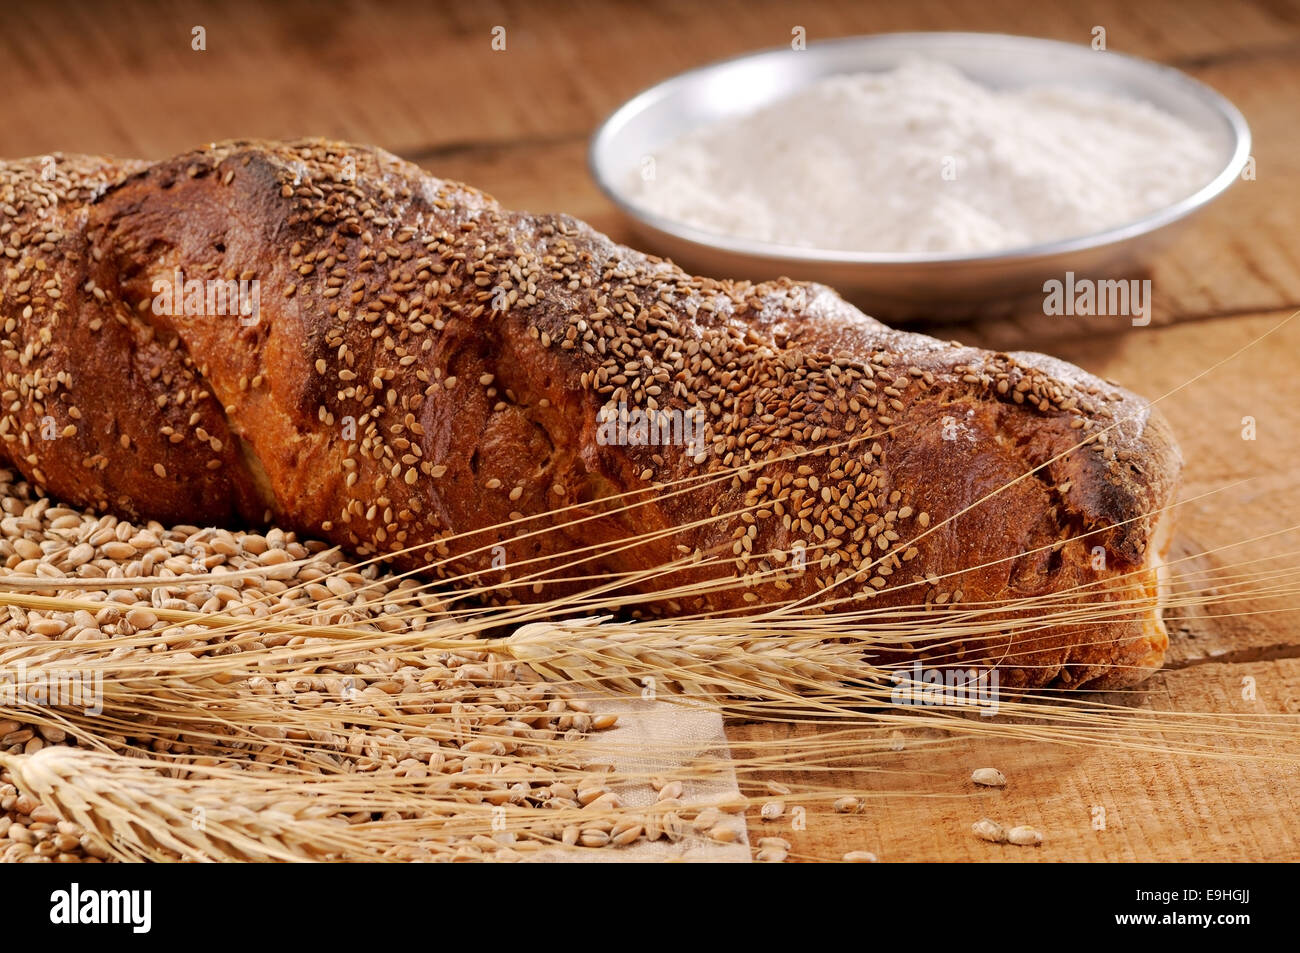 Appena sfornato il pane croccante, cotta nel tradizionale forno a legna Foto Stock